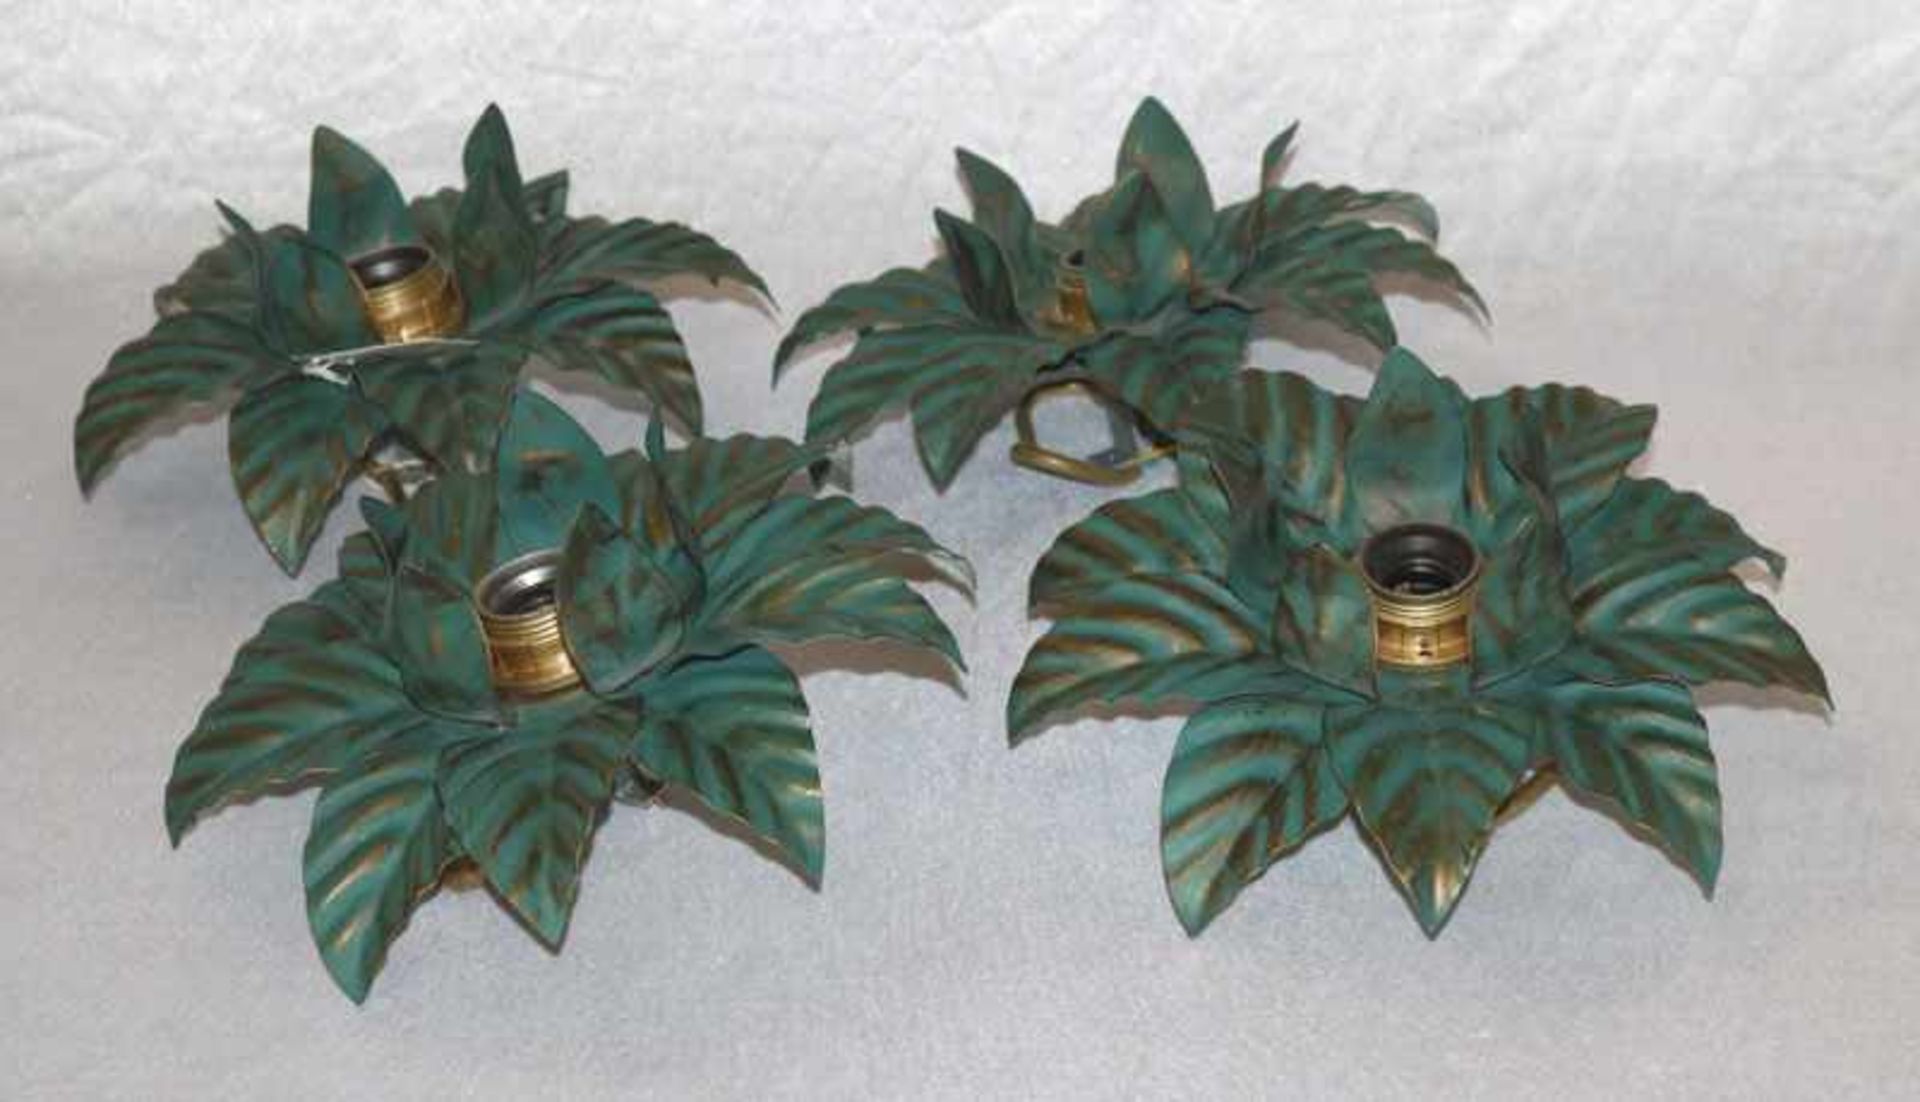 4 Metall Deckenlampen in Blütenform, H 12 cm, D 27 cm, Gebrauchsspuren